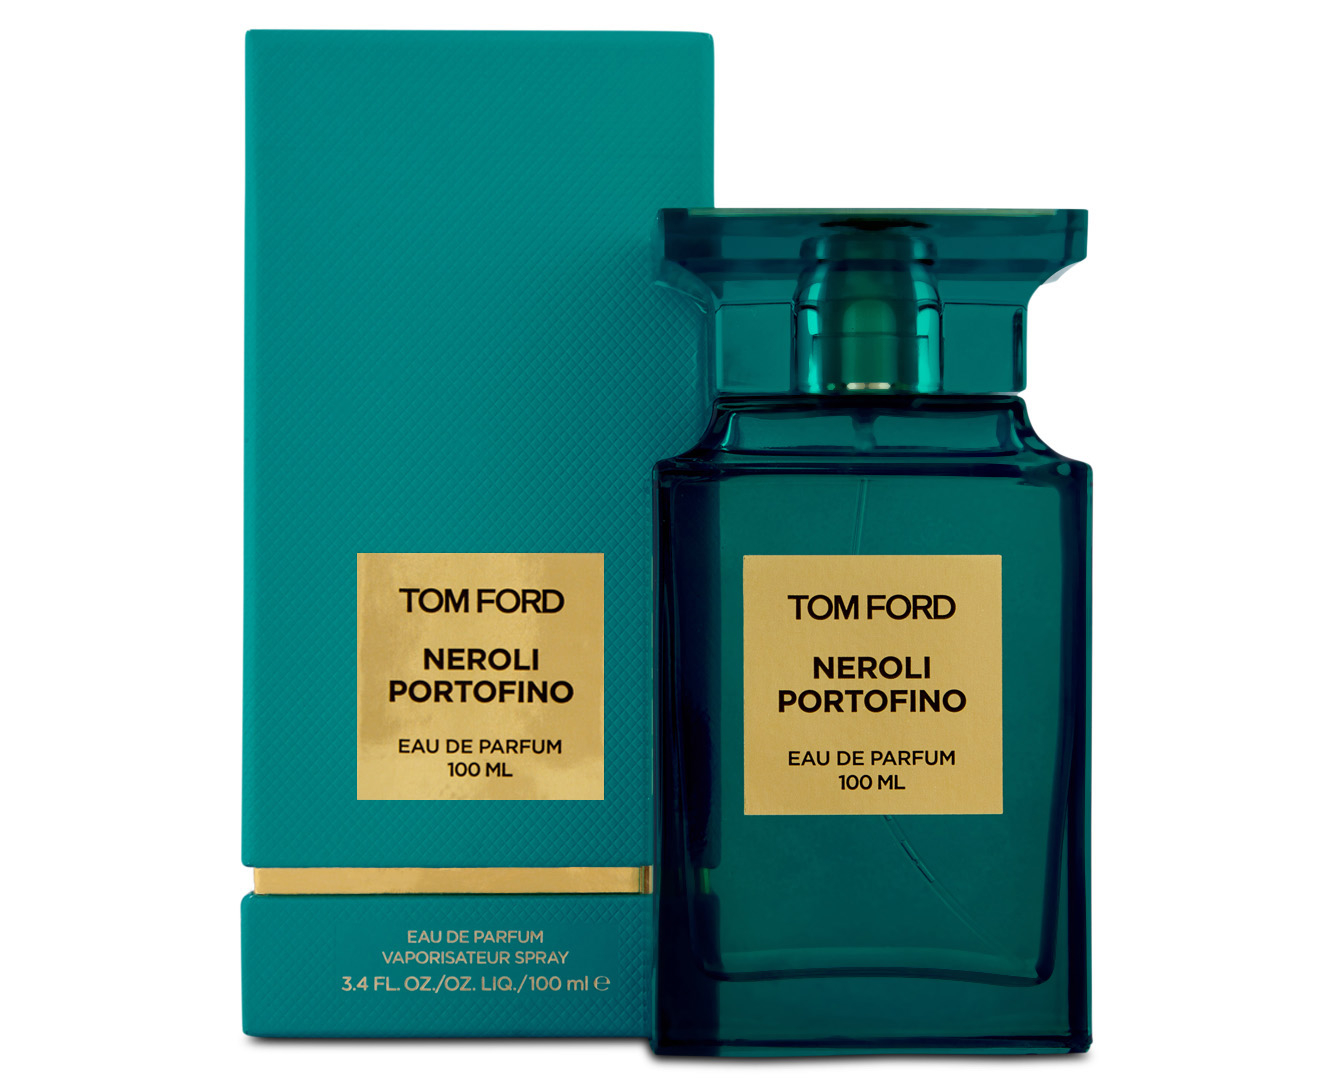 Tom Ford Neroli Portofino EDP Perfume 100mL 